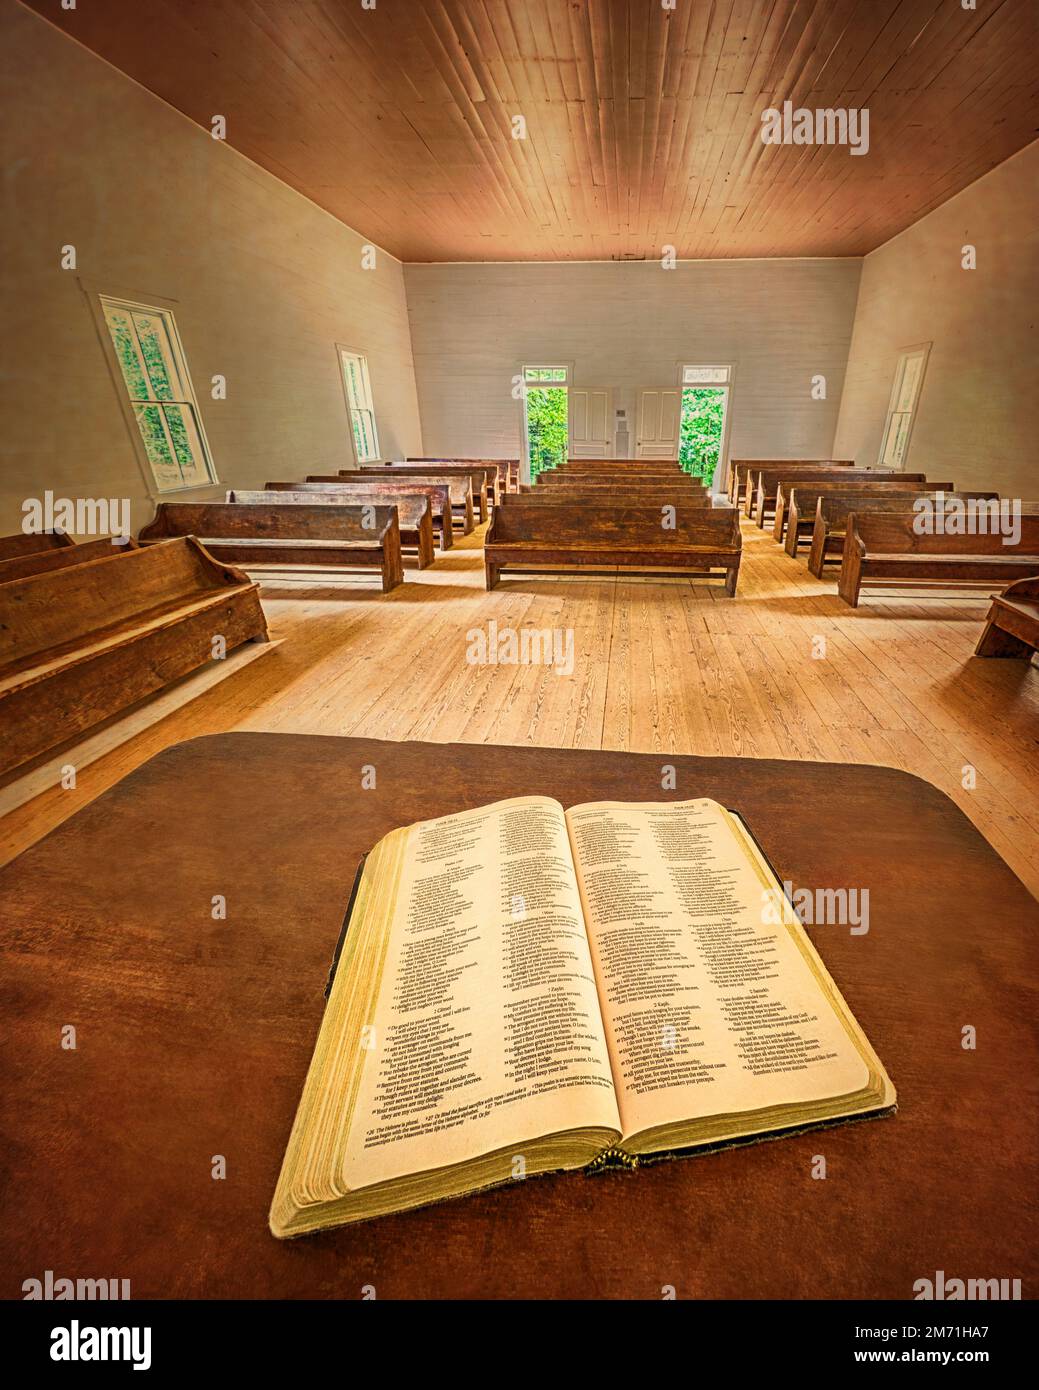 Un'immagine verticale di un piano pulpito con una Bibbia aperta seduta su di esso, con il resto di un vuoto scudiero pioniere sullo sfondo. Foto Stock